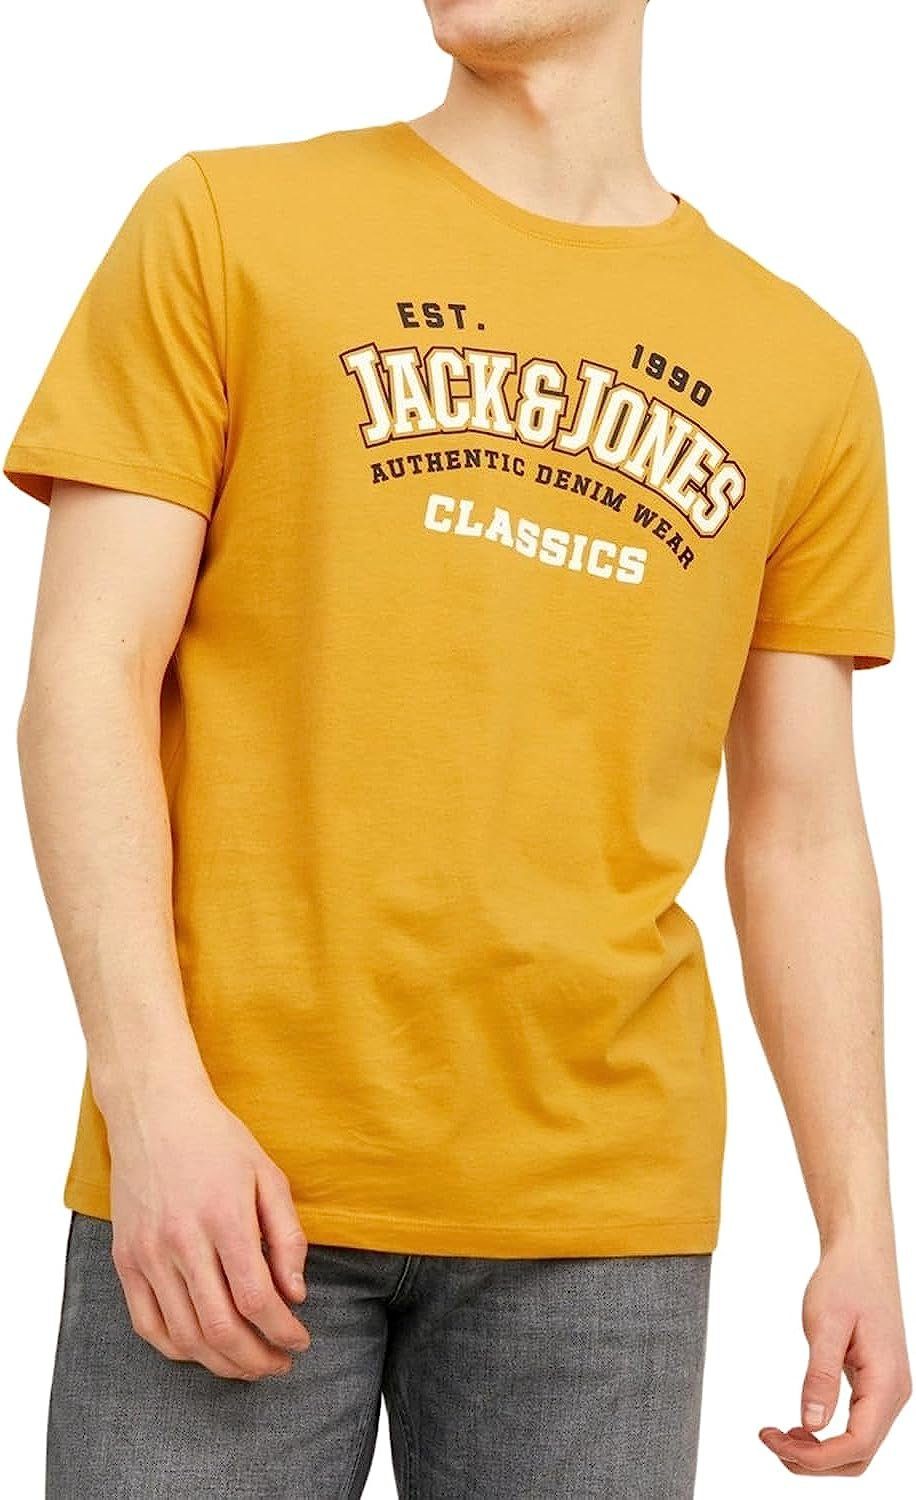 & Print-Shirt Jones aus 17 Jack 5er Aufdruck, Baumwolle (5er-Pack) Shirts Slim mit Mix